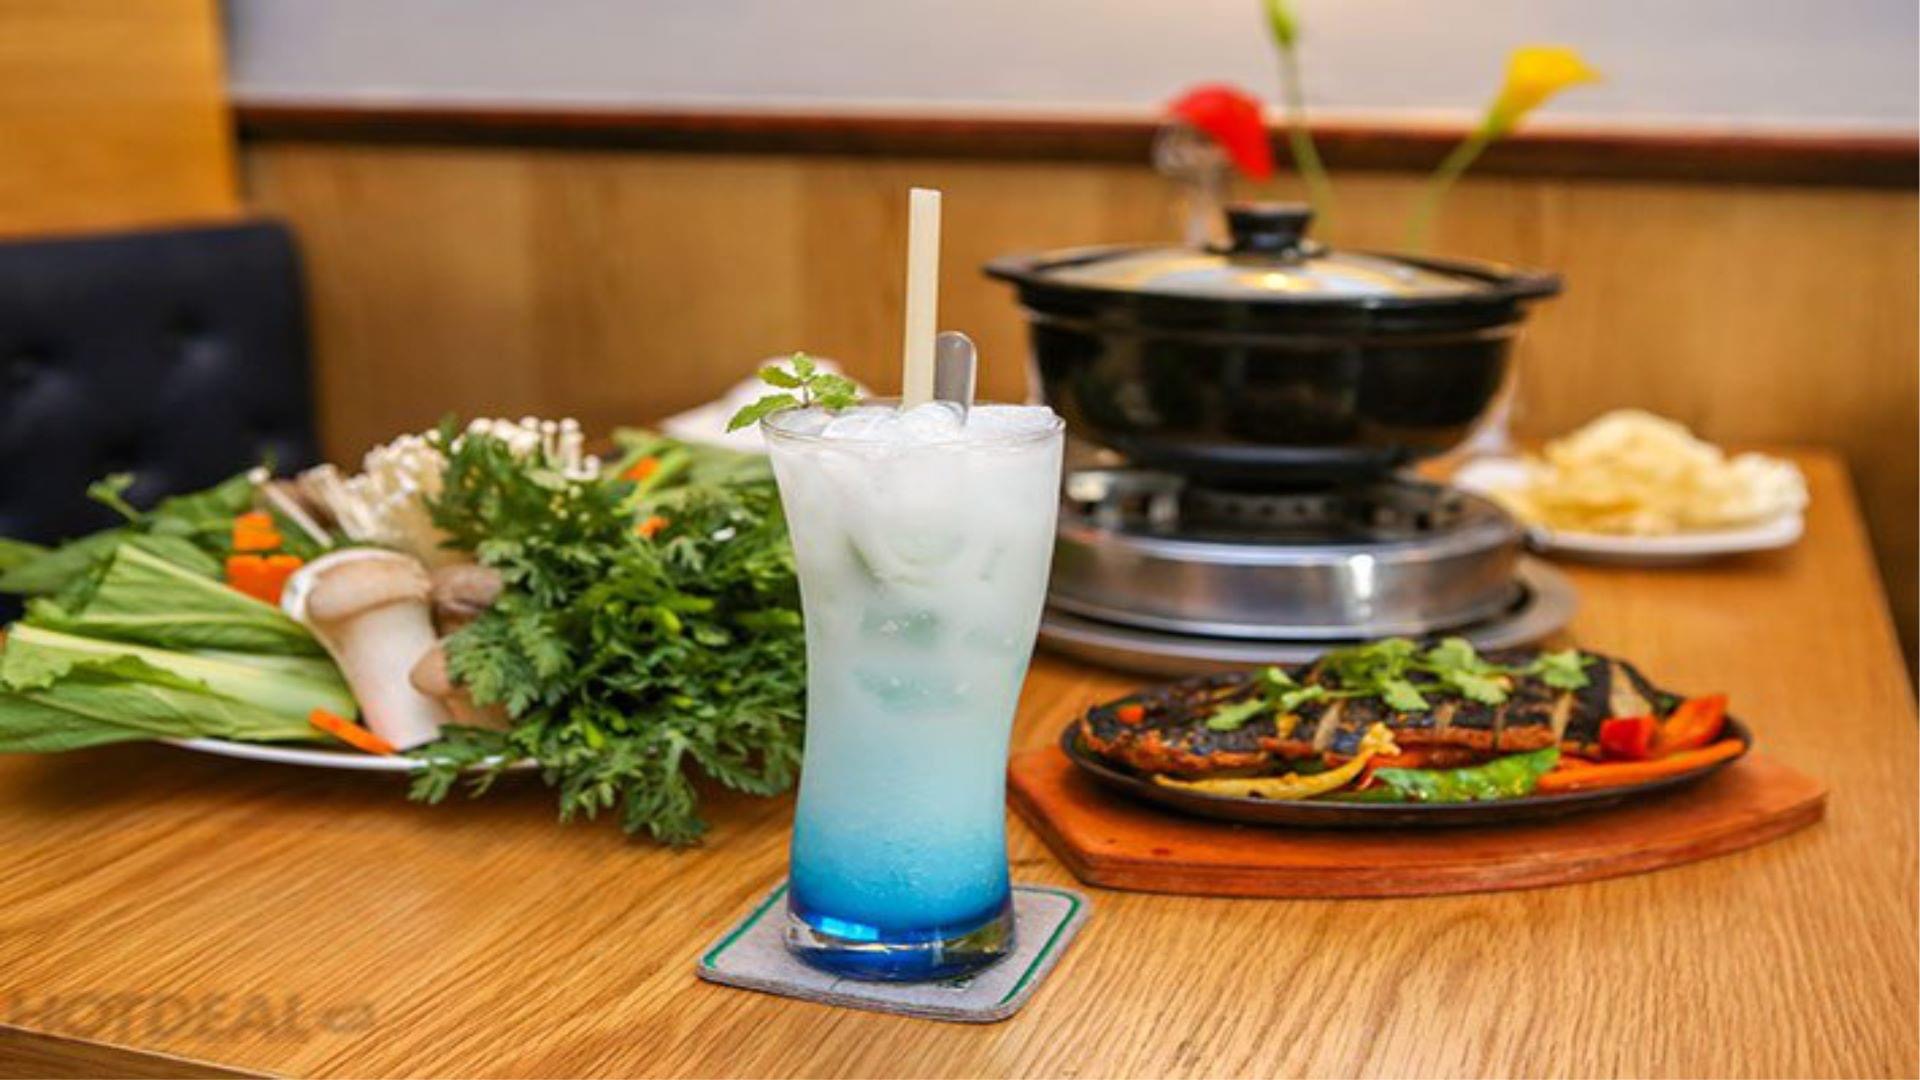 Top 10 quán chay ngon nổi tiếng nhất ở thành phố Hồ Chí Minh - Nhà Hàng Chay Bà Xã